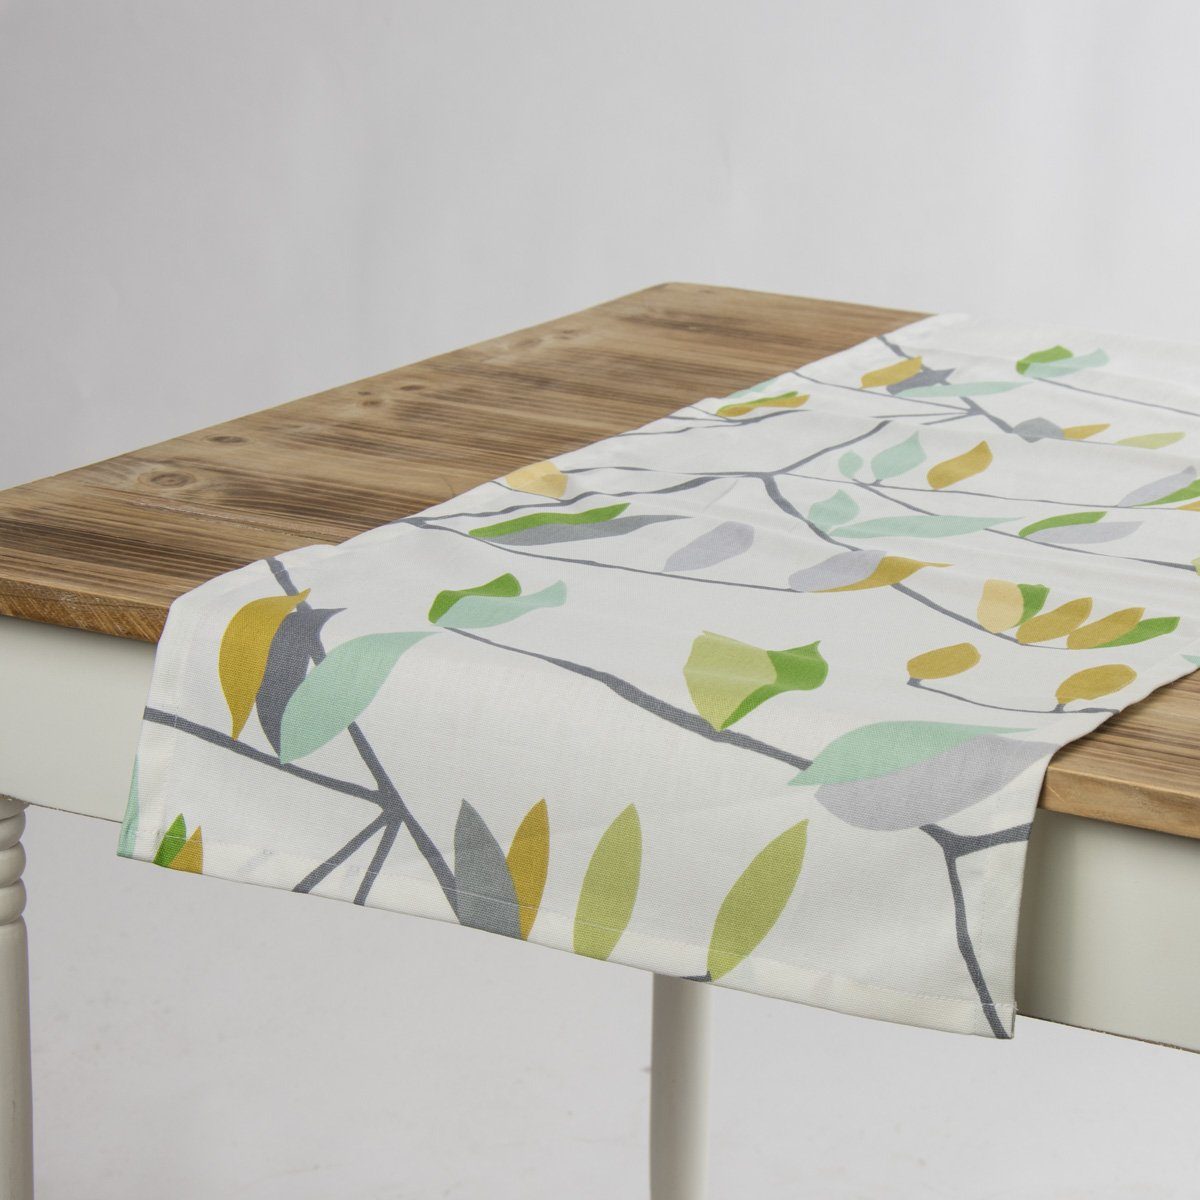 SCHÖNER LEBEN. Tischläufer Tischläufer Coco Plum Blätter grün gelb 40x160cm, handmade